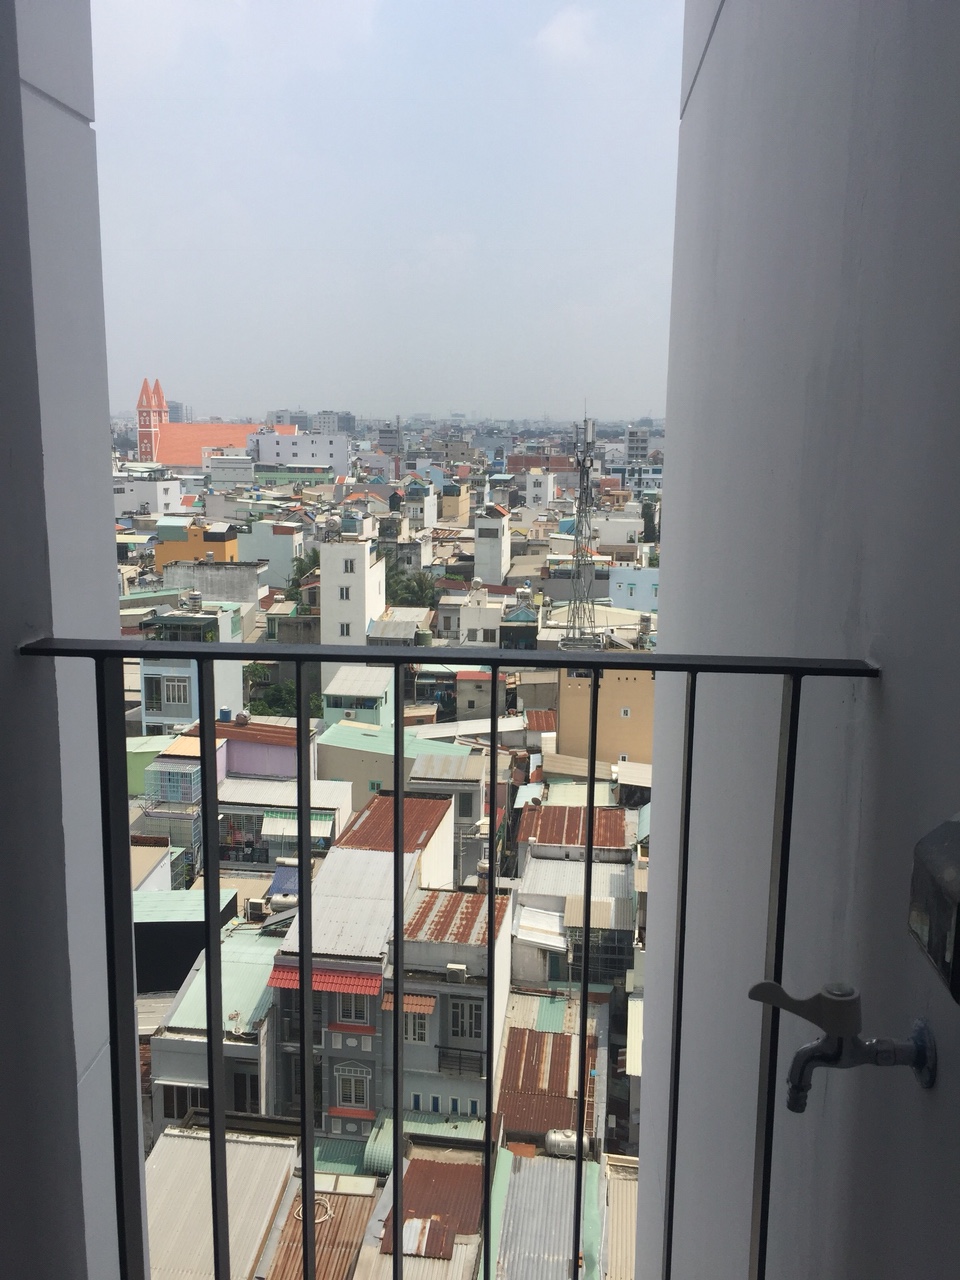 Tôi cần bán gấp, căn hộ M-One Nam Sài Gòn Quận 7, 84m2 Căn góc 2 view, 3PN 2WC, giá 2,550 tỷ